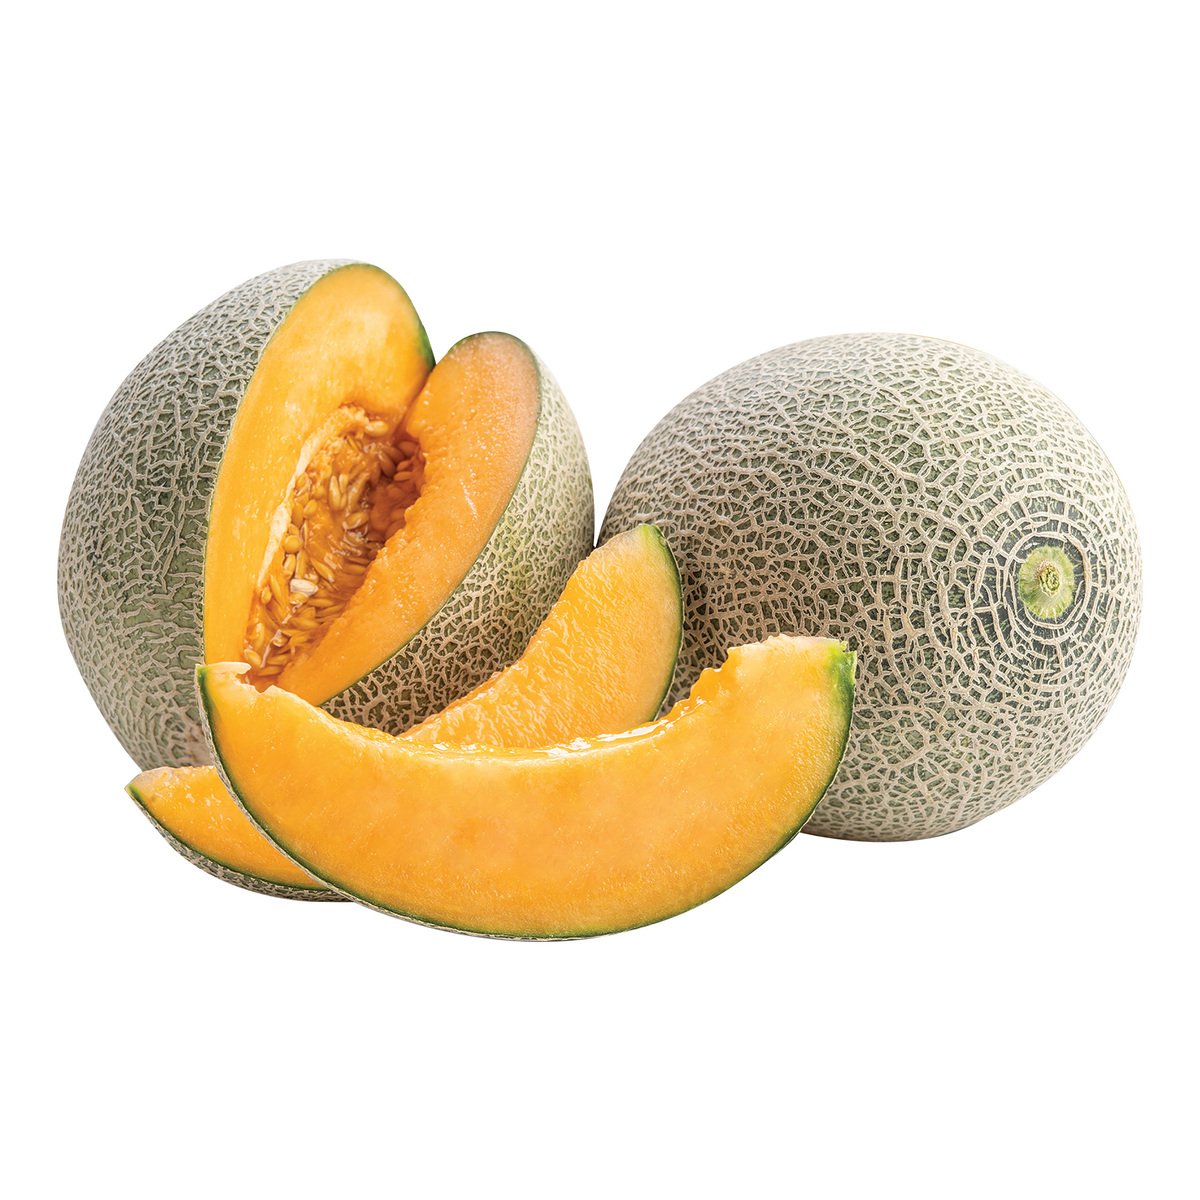 Buy Rock Melon Iran 1.5 kg Online at Best Price | Melons | Lulu UAE in UAE